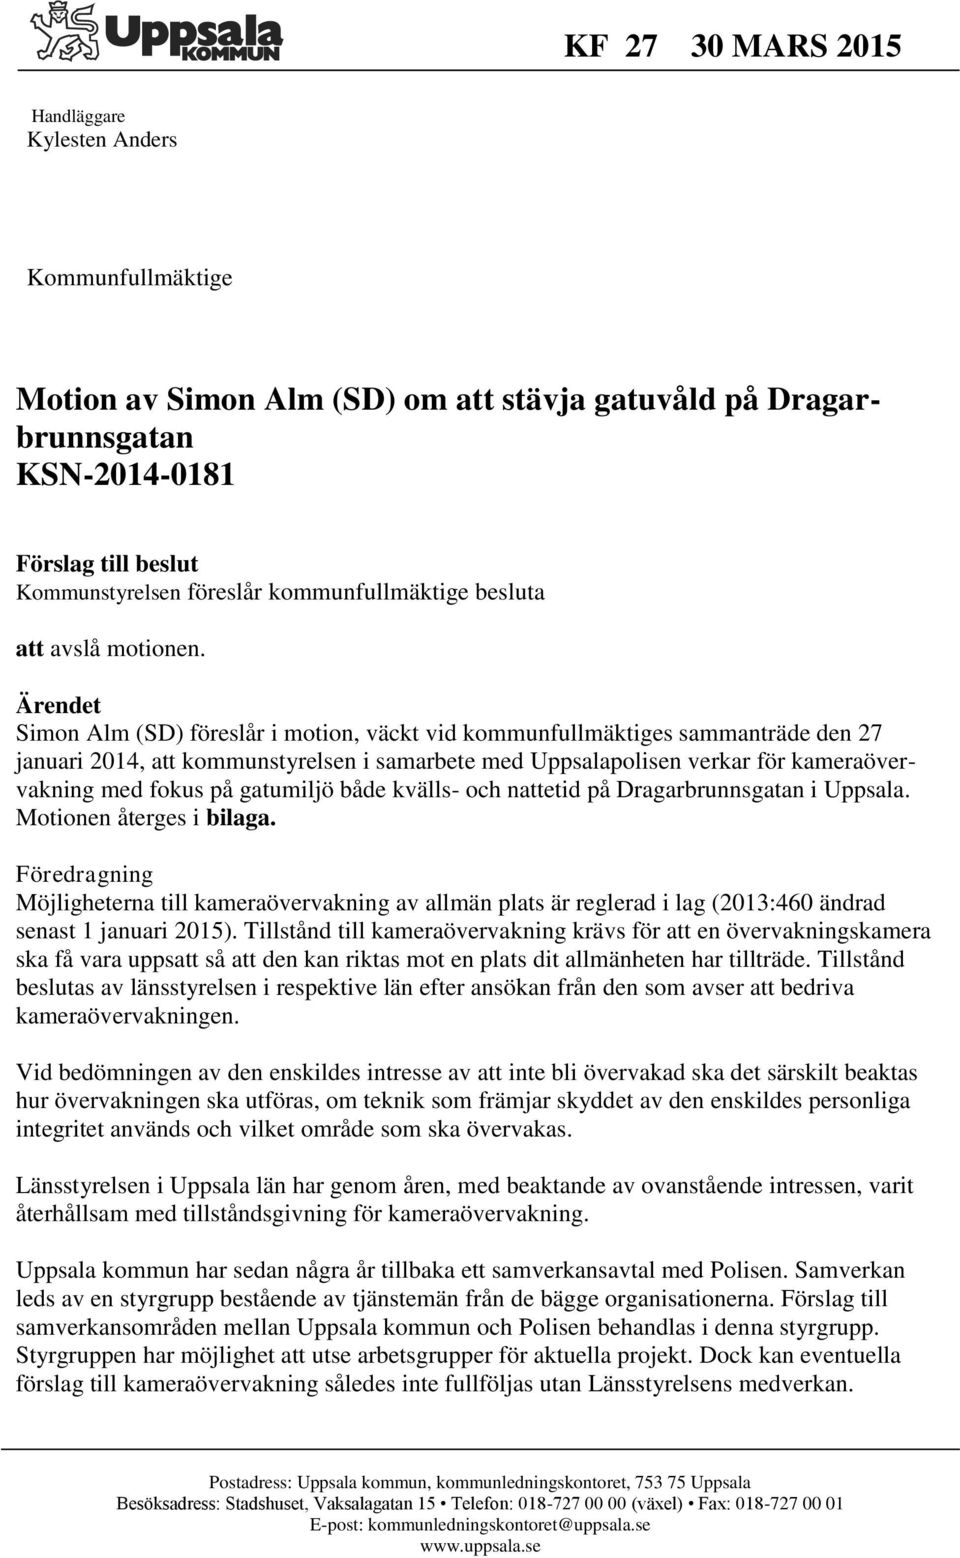 Ärendet Simon Alm (SD) föreslår i motion, väckt vid kommunfullmäktiges sammanträde den 27 januari 2014, att kommunstyrelsen i samarbete med Uppsalapolisen verkar för kameraövervakning med fokus på